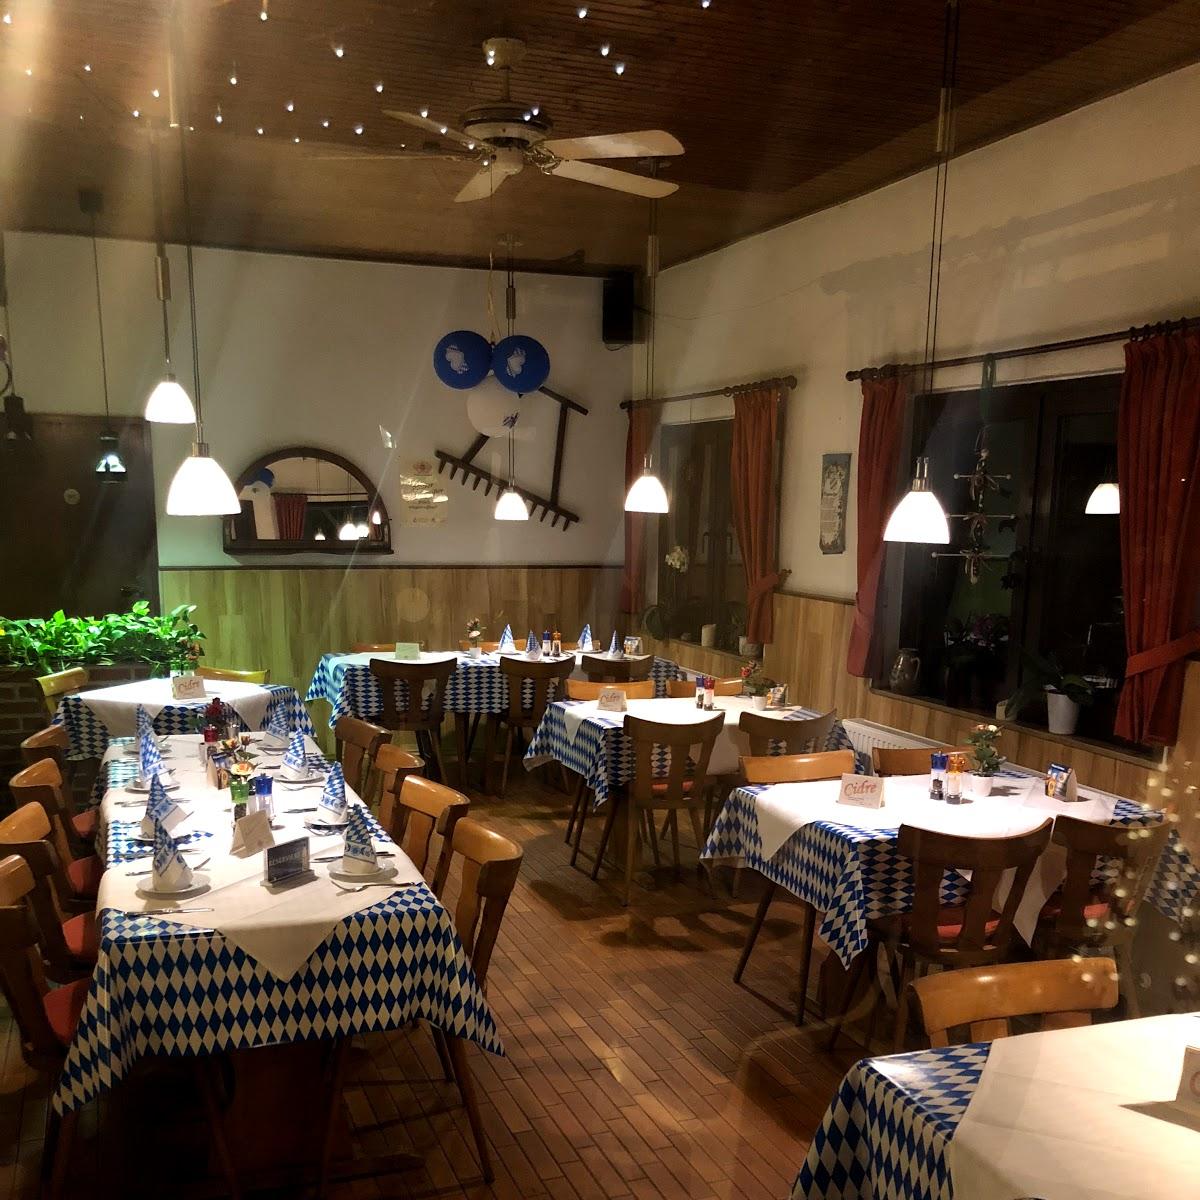 Restaurant "Landgasthof zur Fluchtburg" in Grefrath